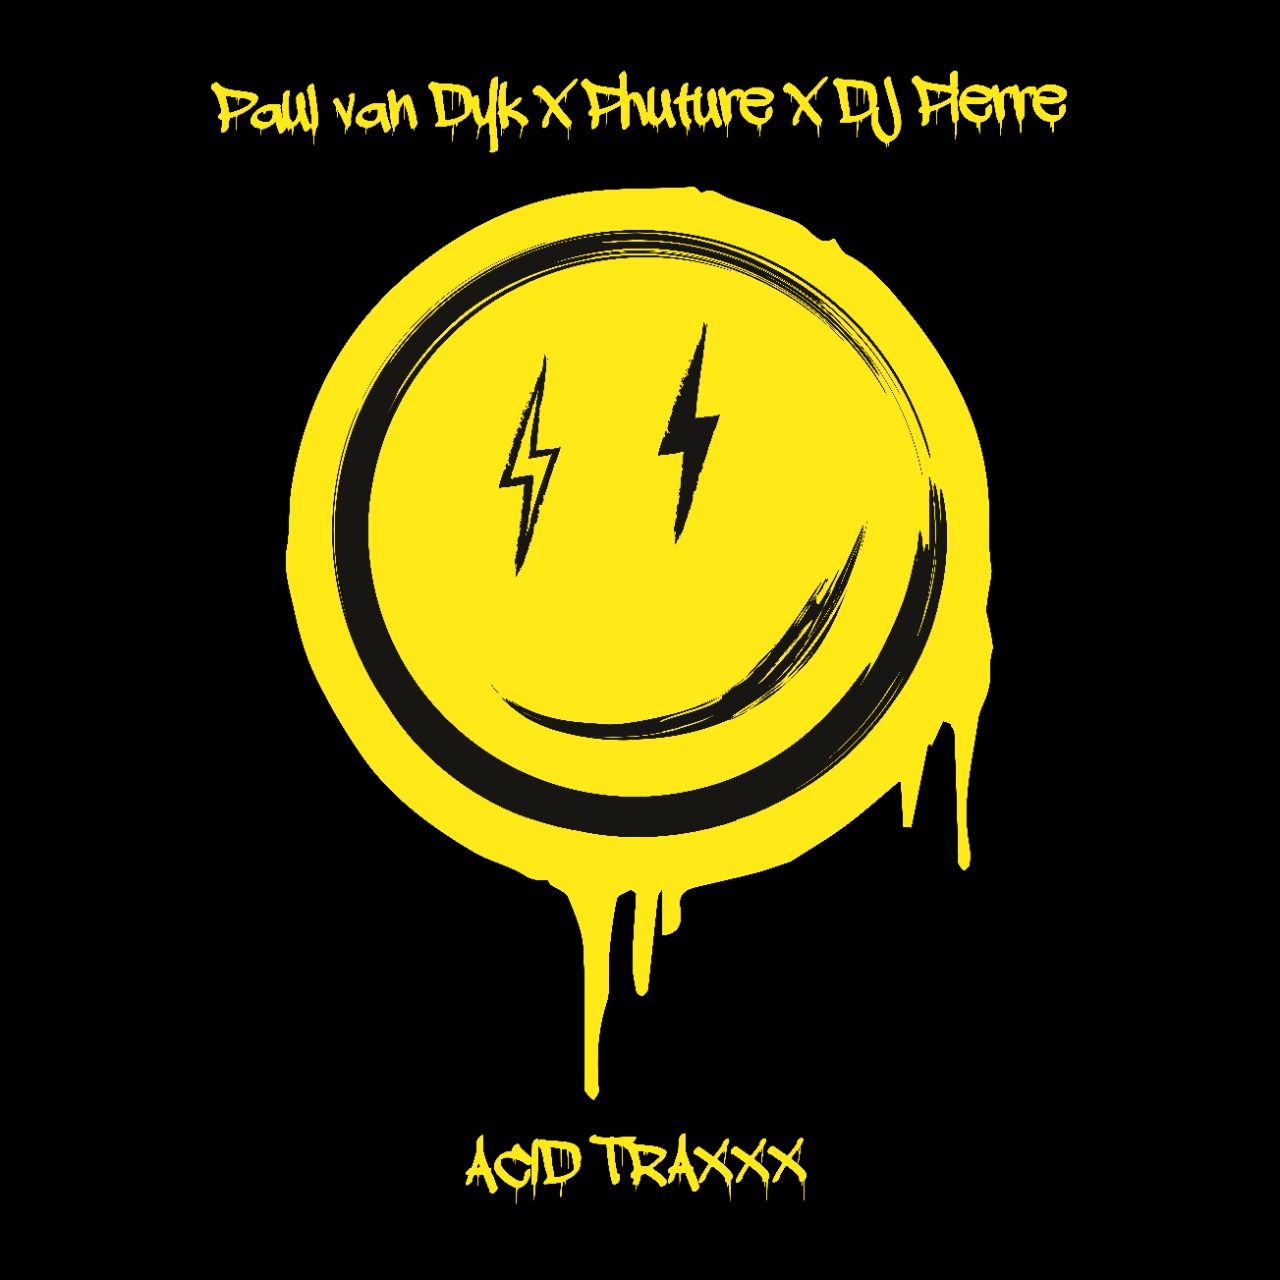 Paul van Dyk et DJ Pierre AKA Phuture sortent le nouvel EP 'ACID TRAXXX'